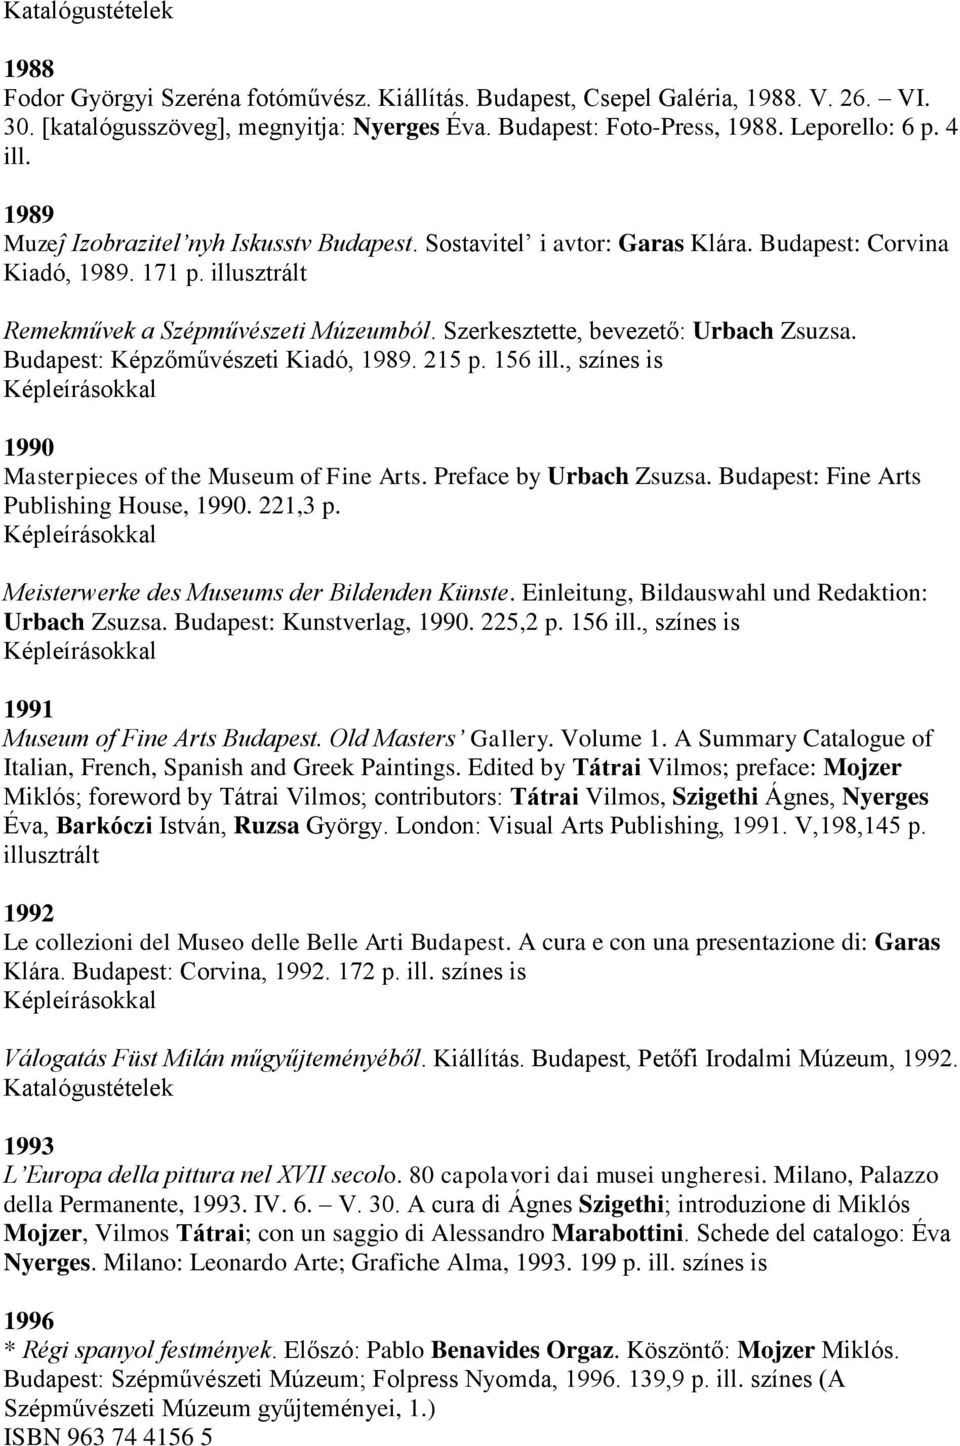 Szerkesztette, bevezető: Urbach Zsuzsa. Budapest: Képzőművészeti Kiadó, 1989. 215 p. 156 ill., színes is 1990 Masterpieces of the Museum of Fine Arts. Preface by Urbach Zsuzsa.